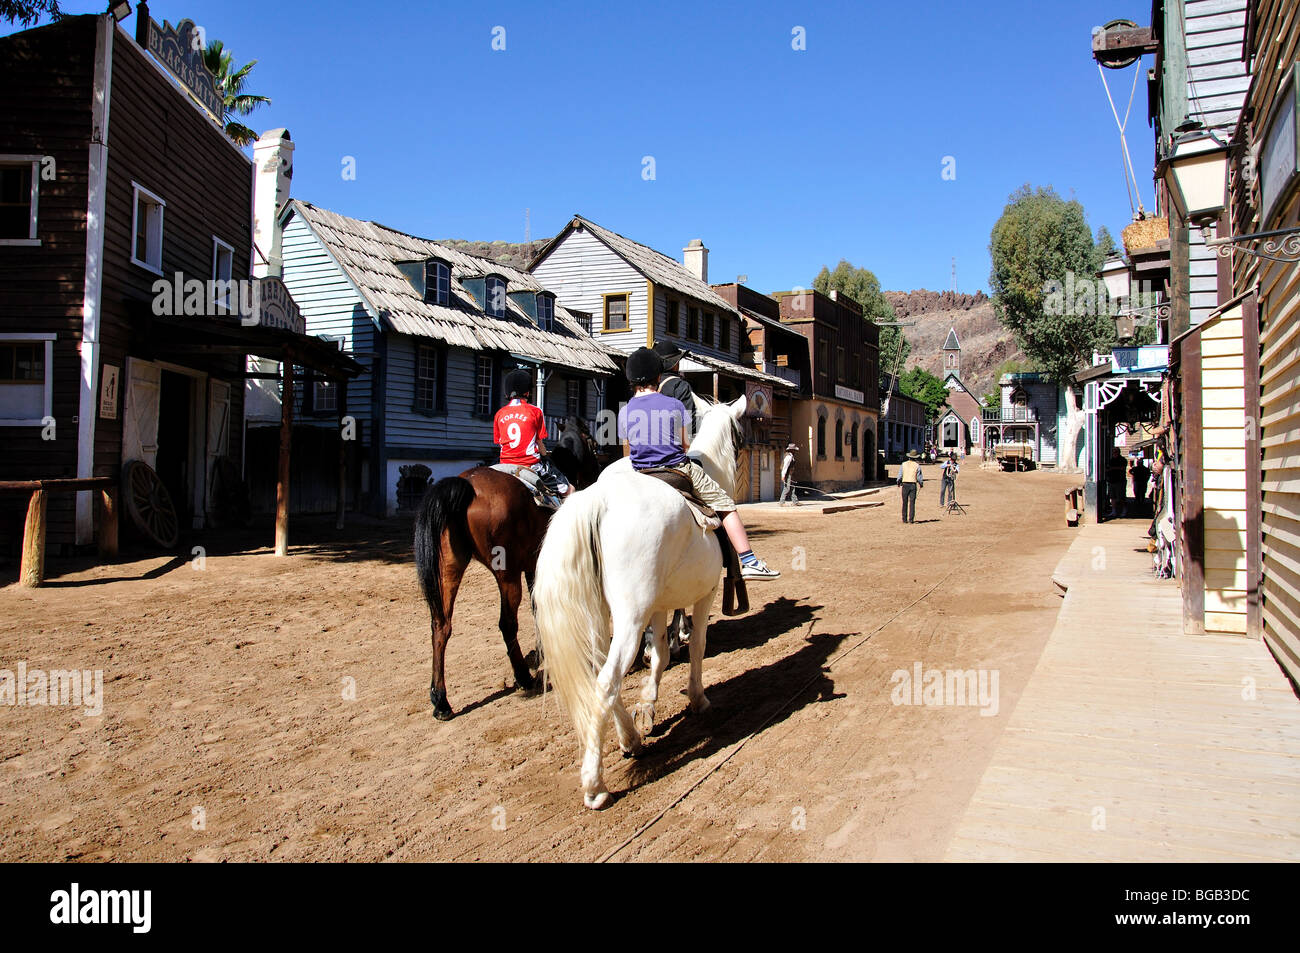 Aire de promenade à cheval, Sioux City, San Augustin, San Bartolome Municipalité, Gran Canaria, Îles Canaries, Espagne Banque D'Images